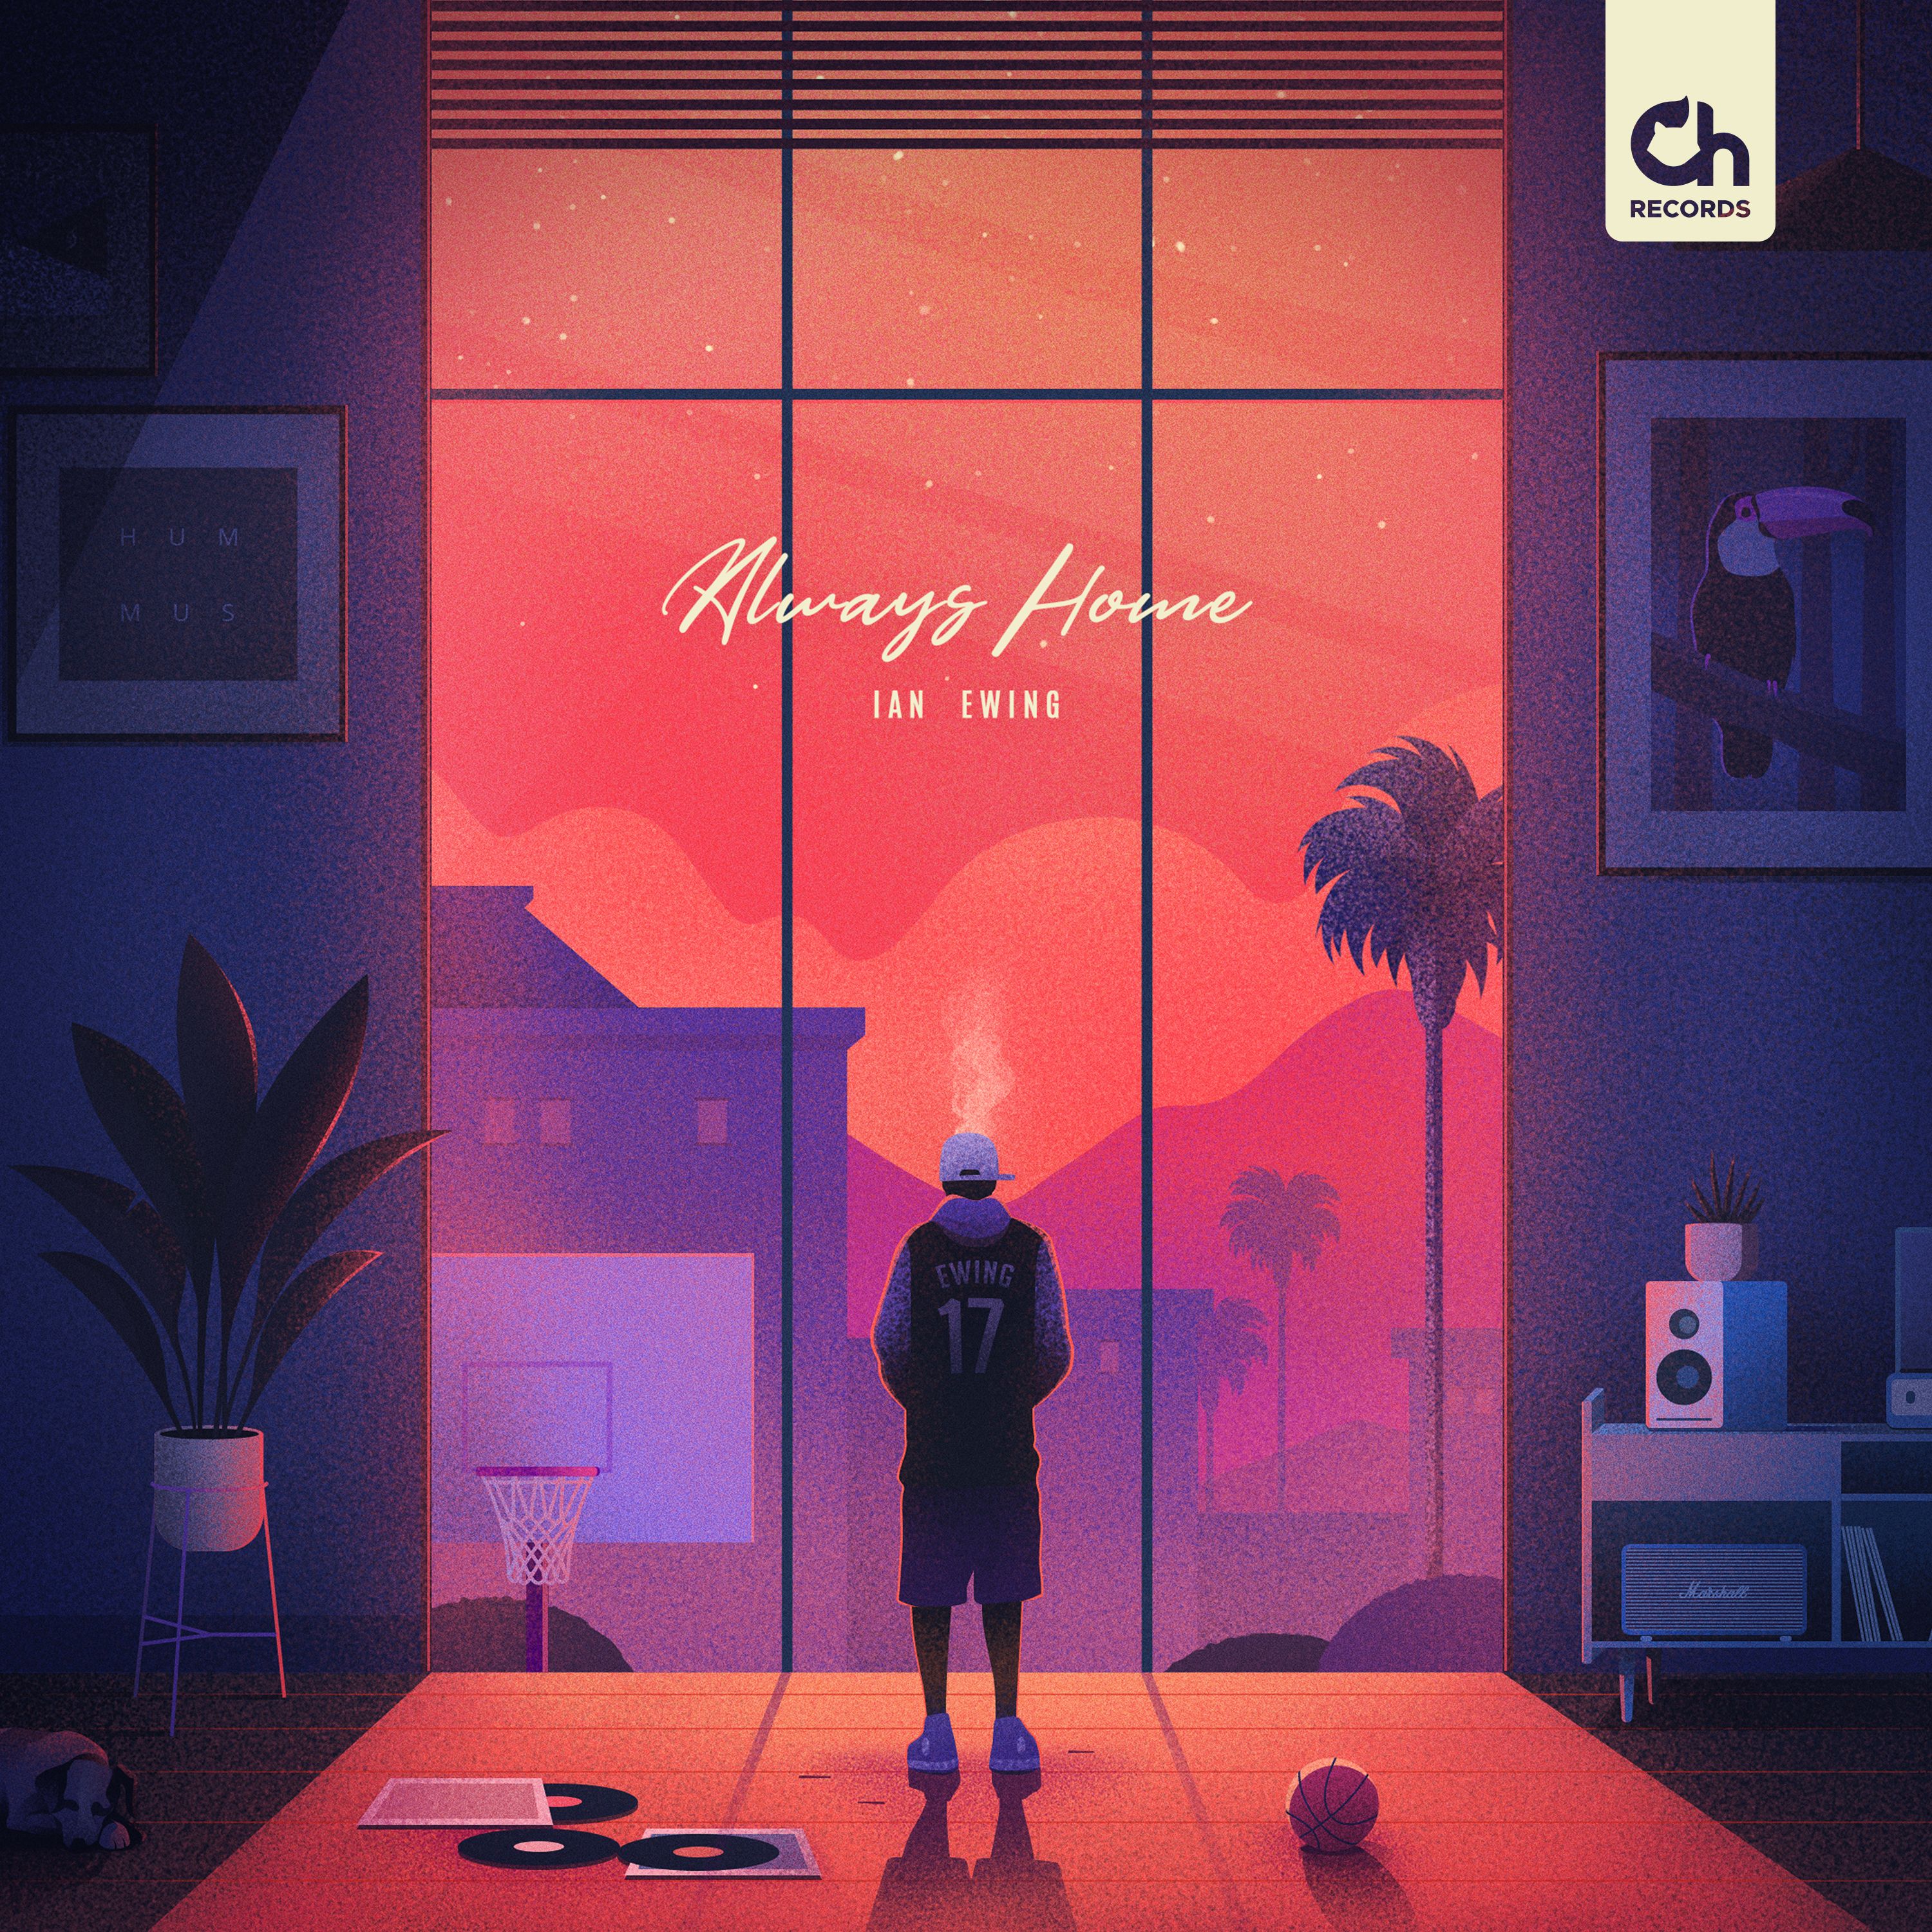 ¡Descargar Ian Ewing - 17 ["Always Home" EP out on 09.09]